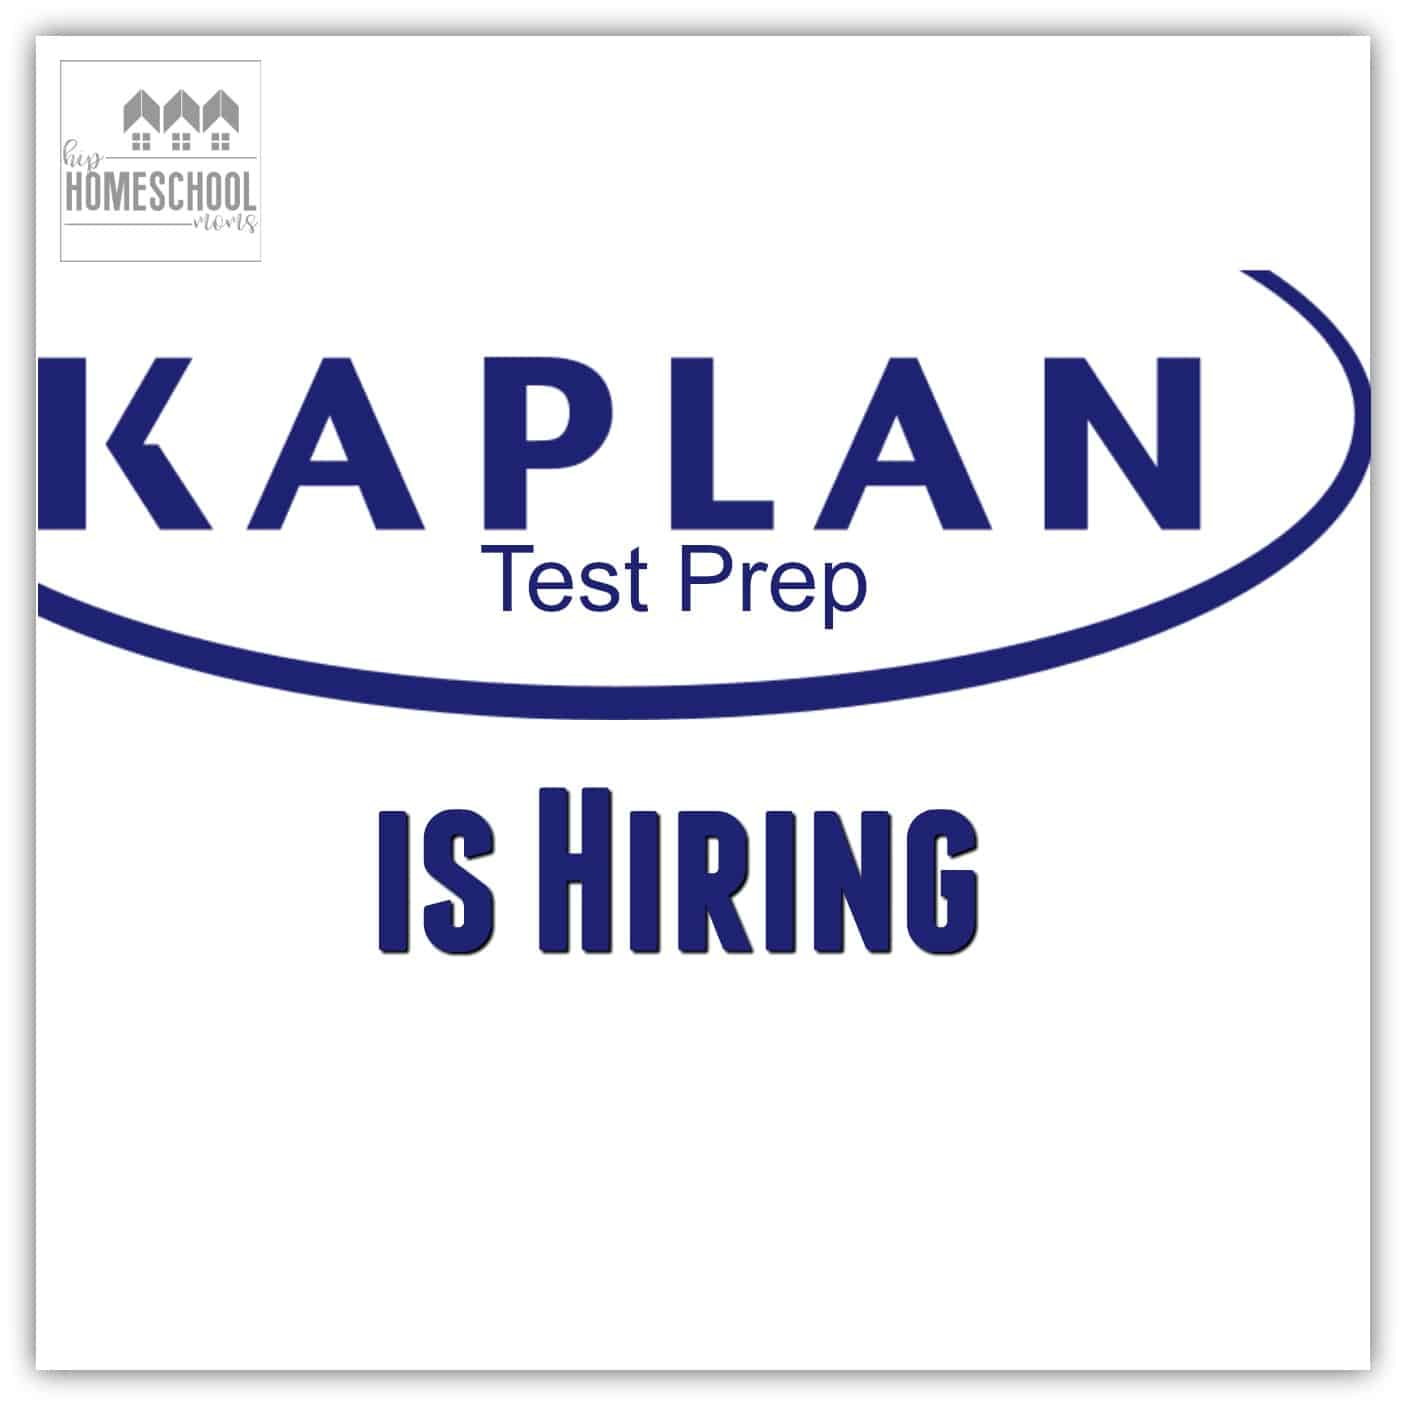 kaplan-test-prep-is-hiring-hip-homeschool-moms